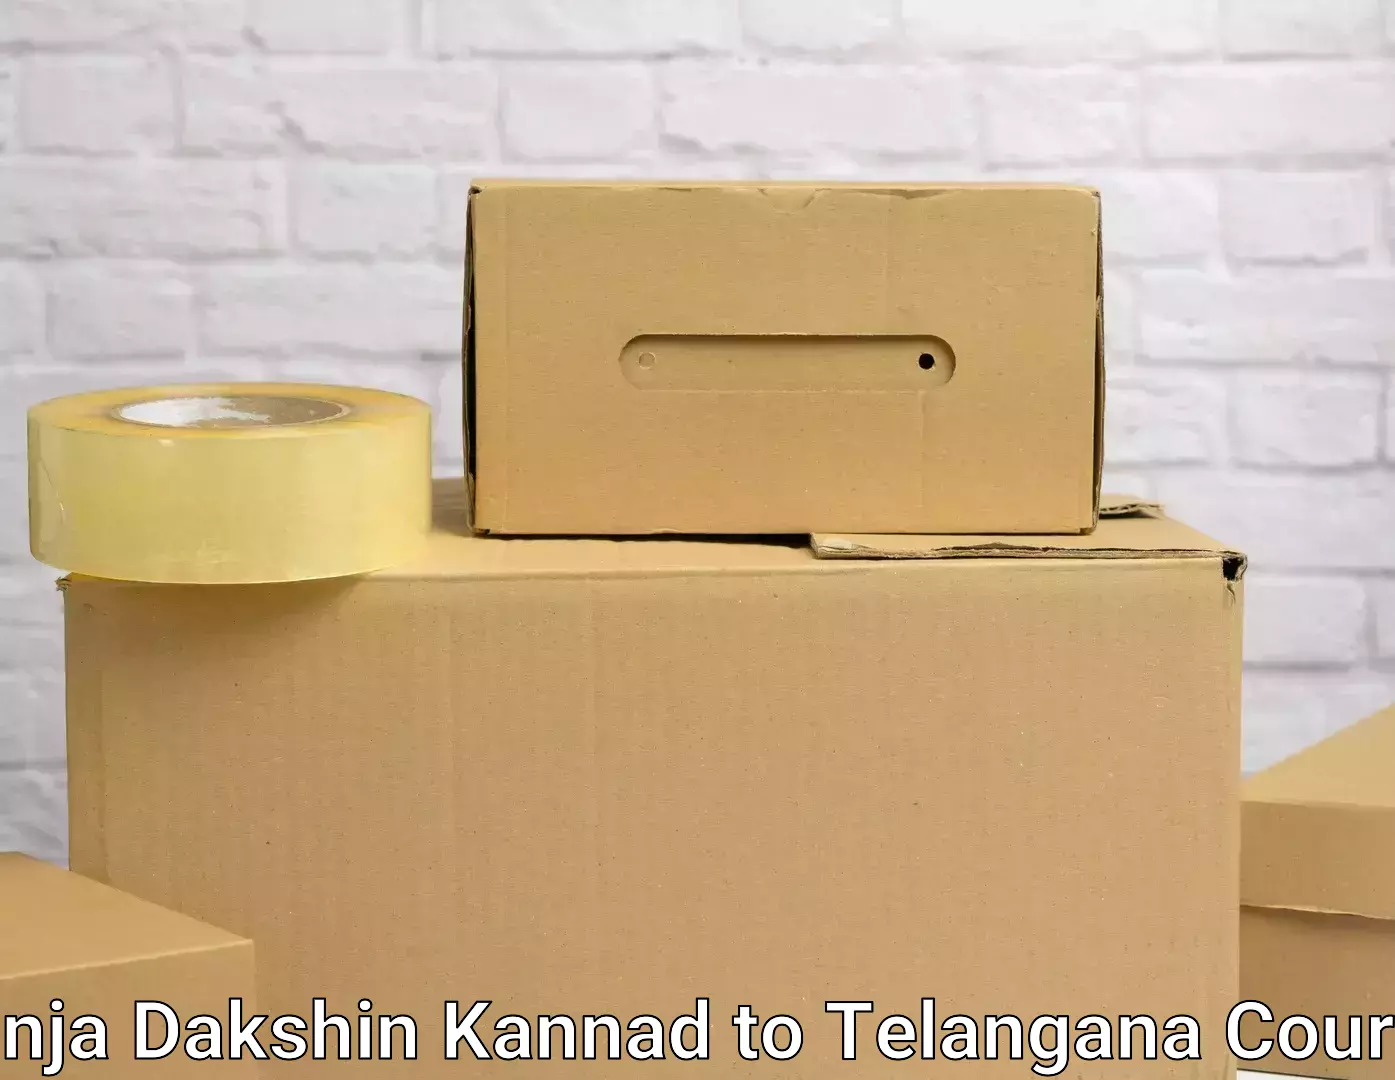 Furniture transport company Panja Dakshin Kannad to Tiryani